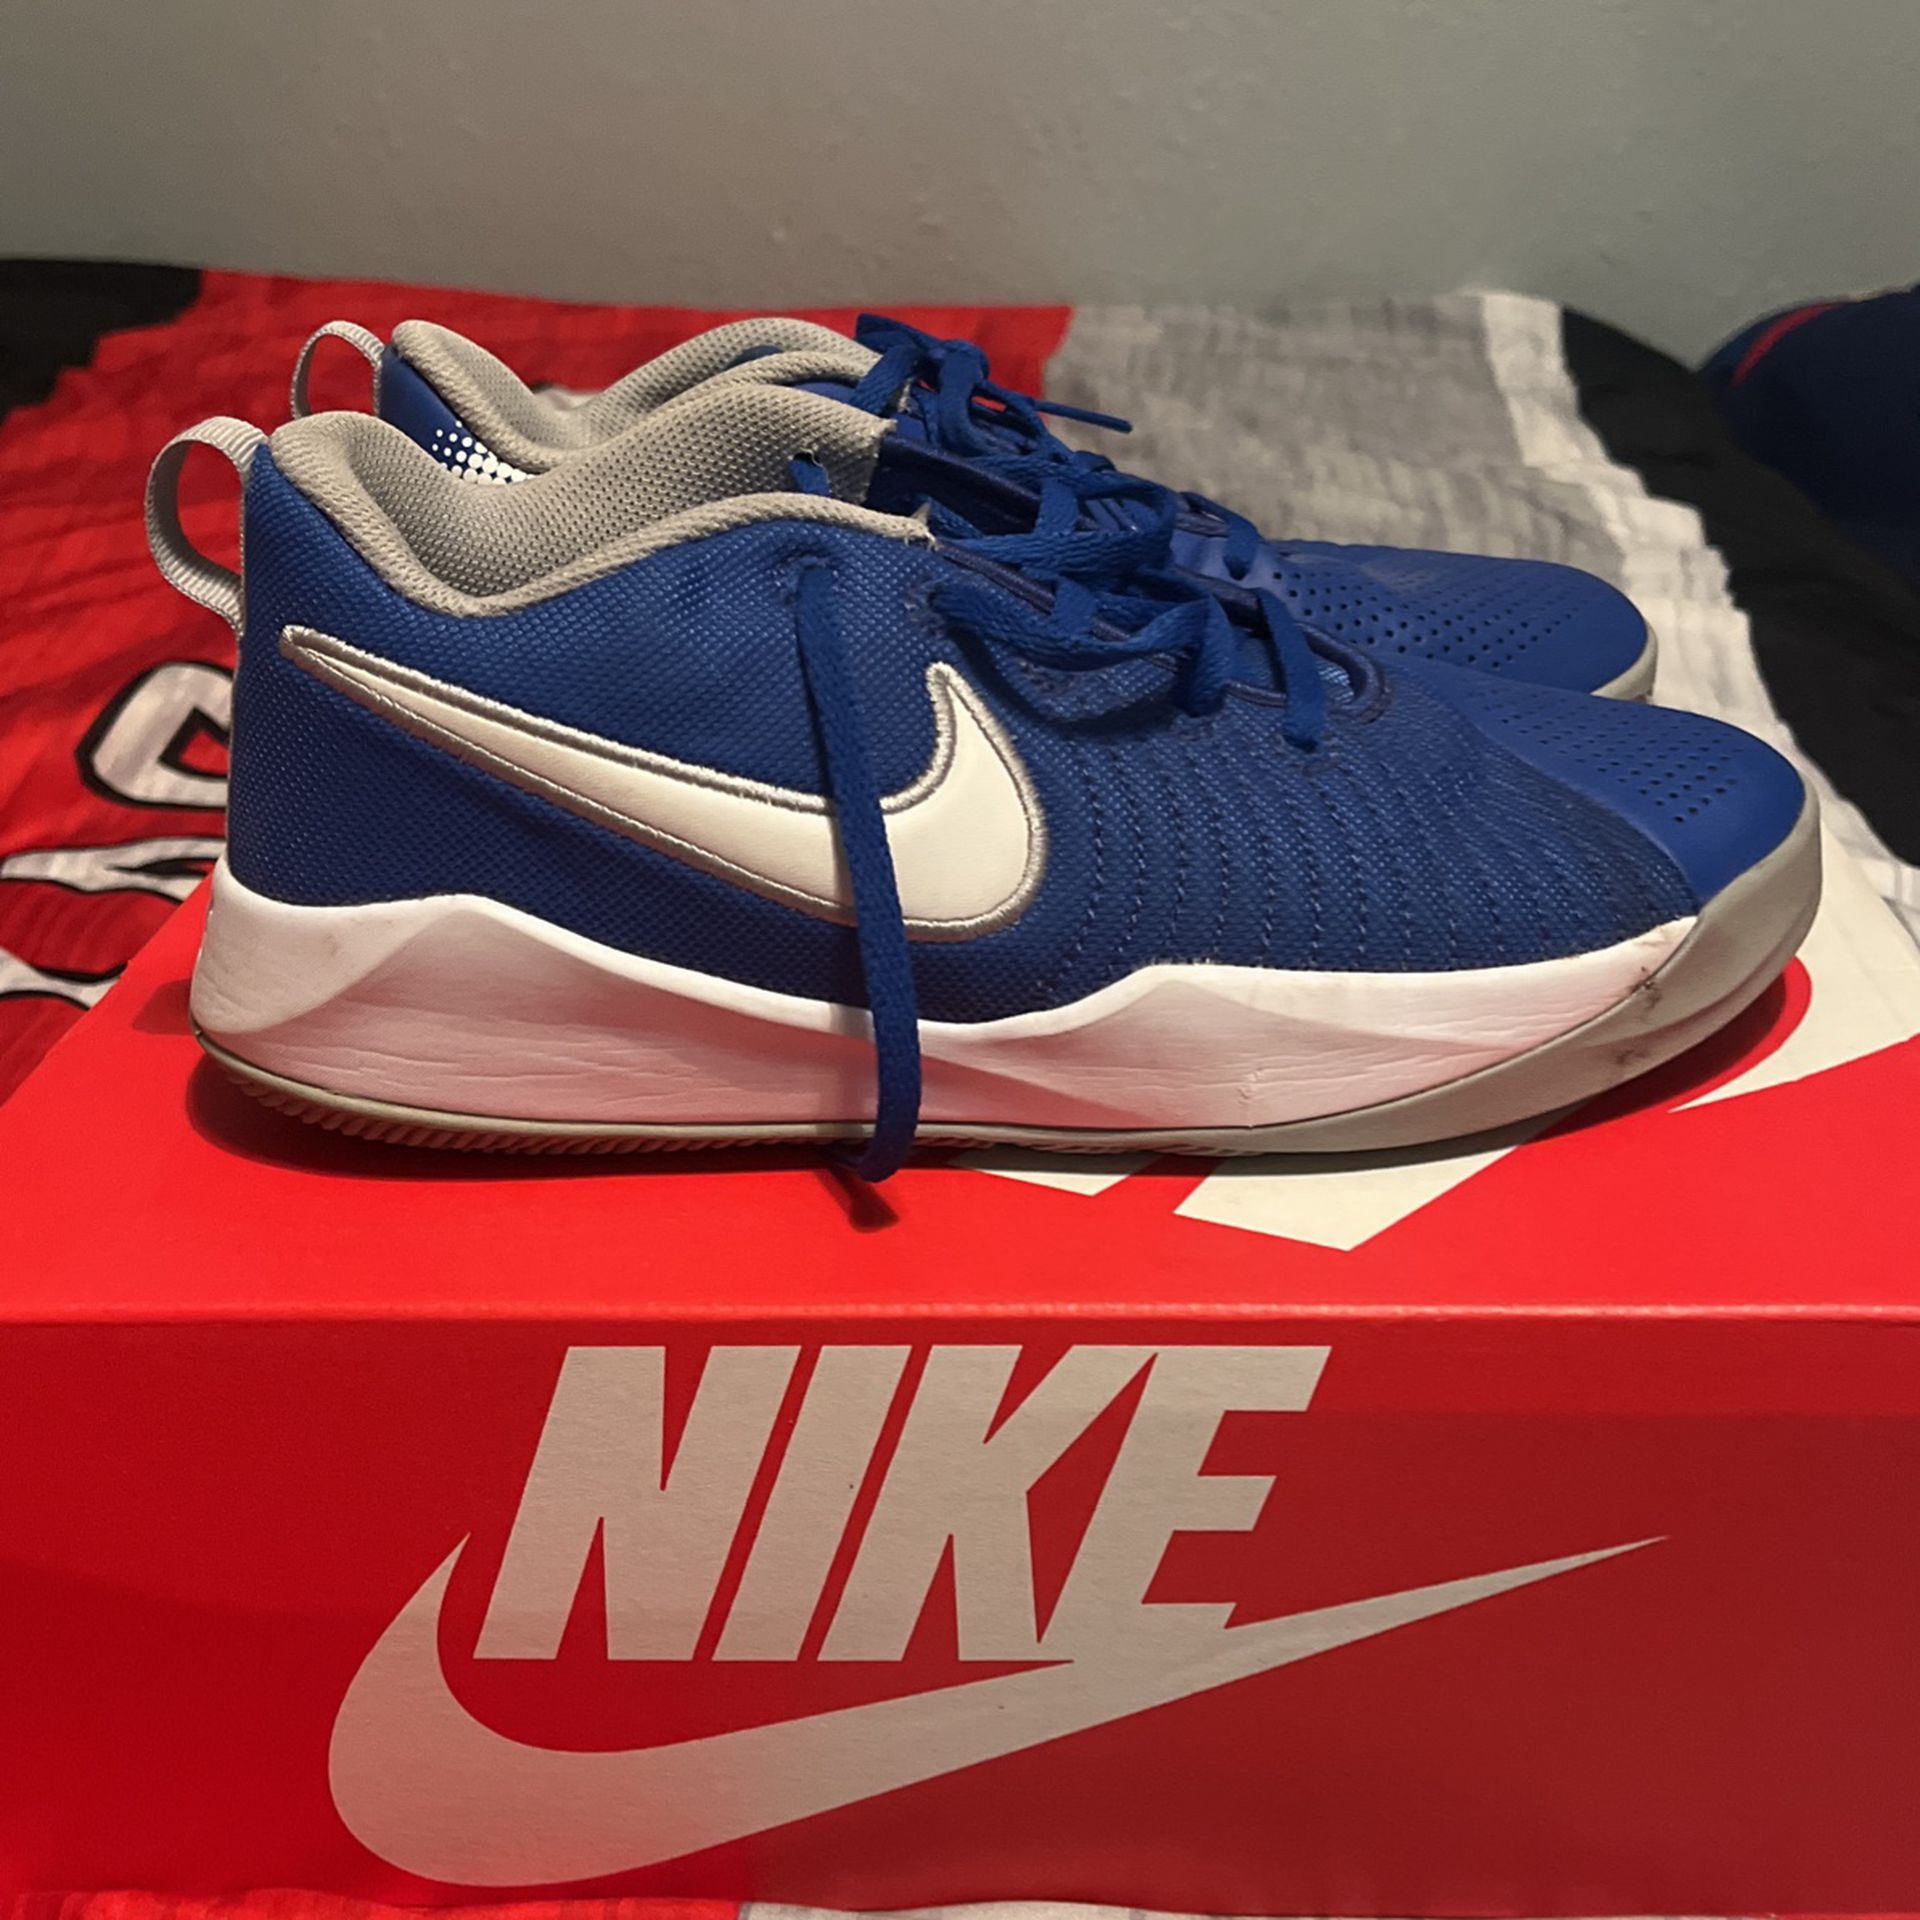 Blue Nike’s